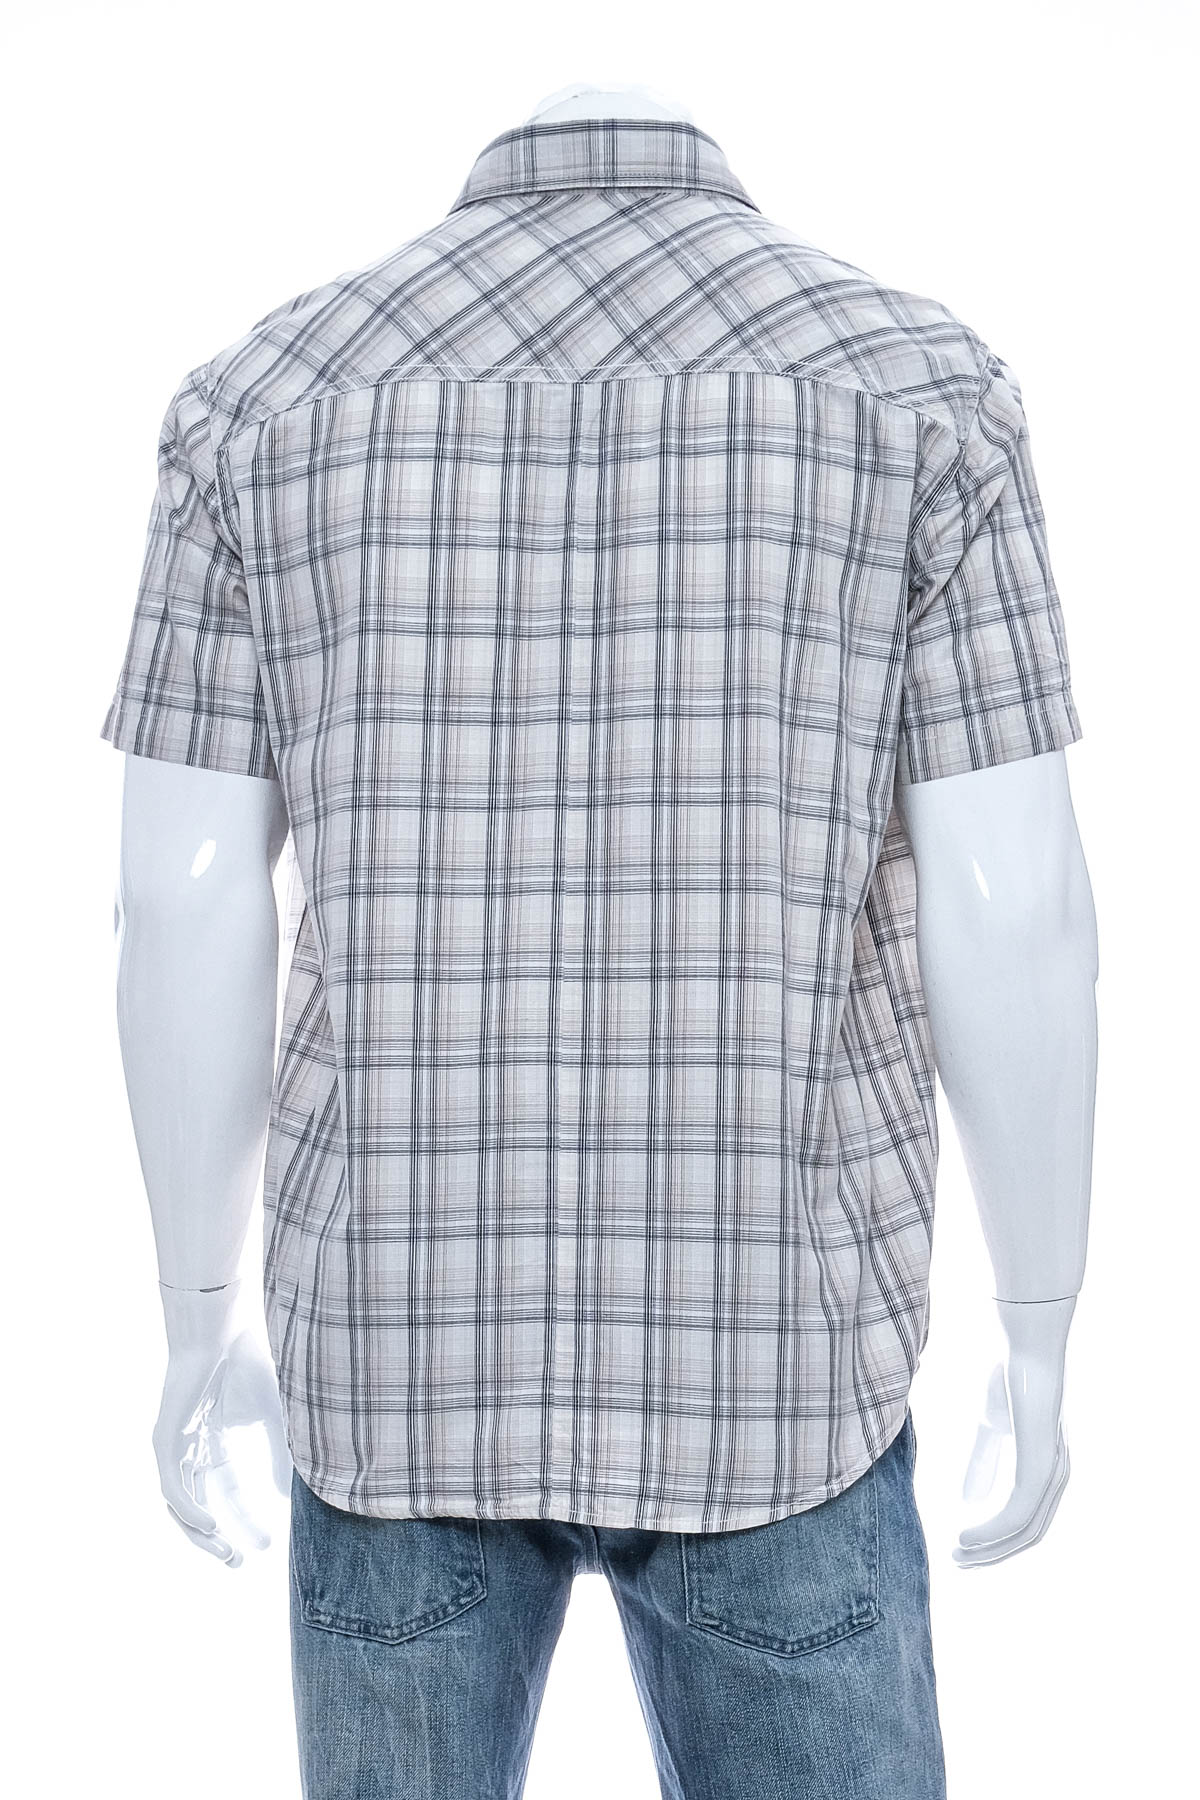 Ανδρικό πουκάμισο - Wrangler - 1